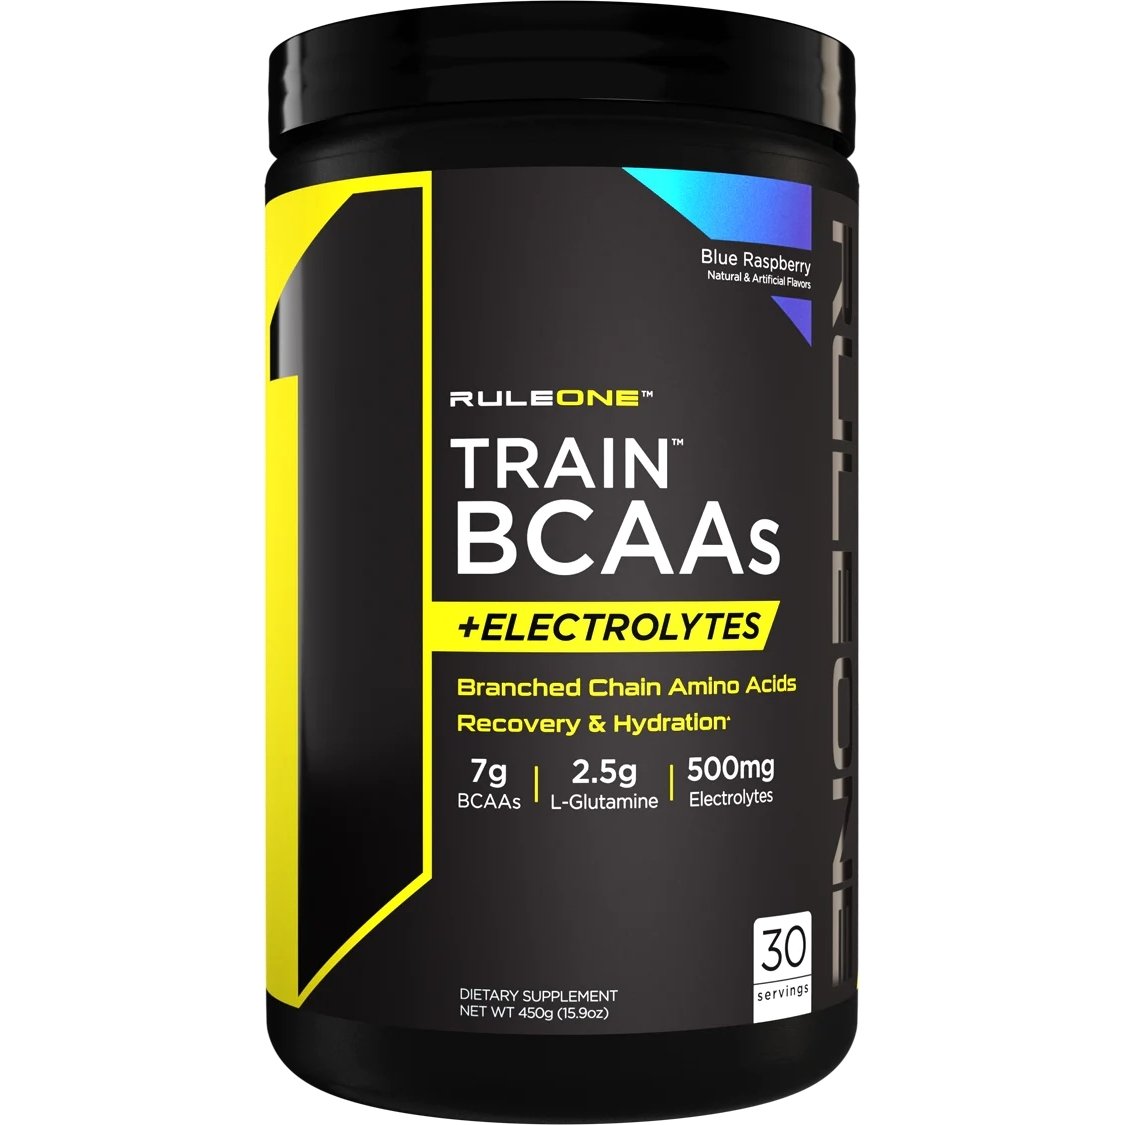 Аминокислота BCAA Rule 1 Train BCAAs + Electrolytes, 450 грамм Ежевика,  ml, Rule One Proteins. BCAA. Weight Loss recovery Anti-catabolic properties Lean muscle mass 